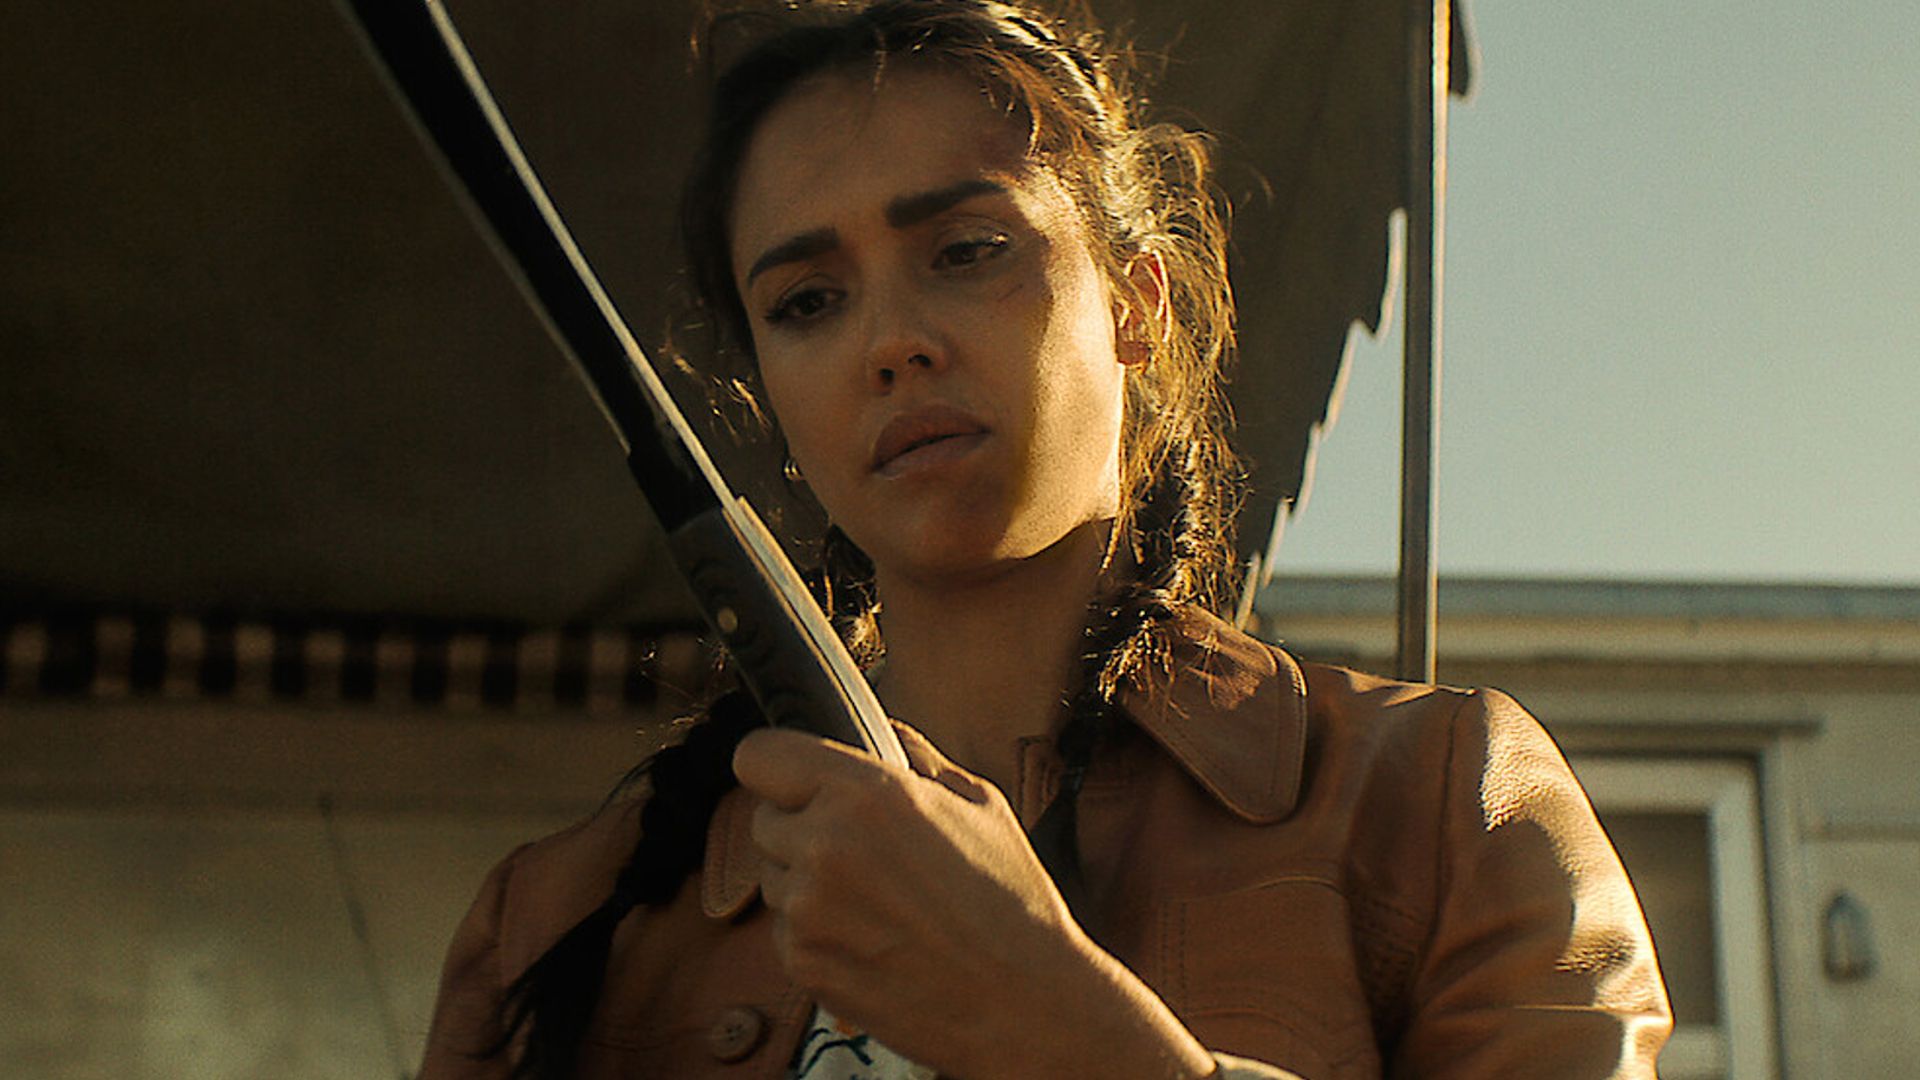 Jessica Alba examining a machete in Trigger Warning